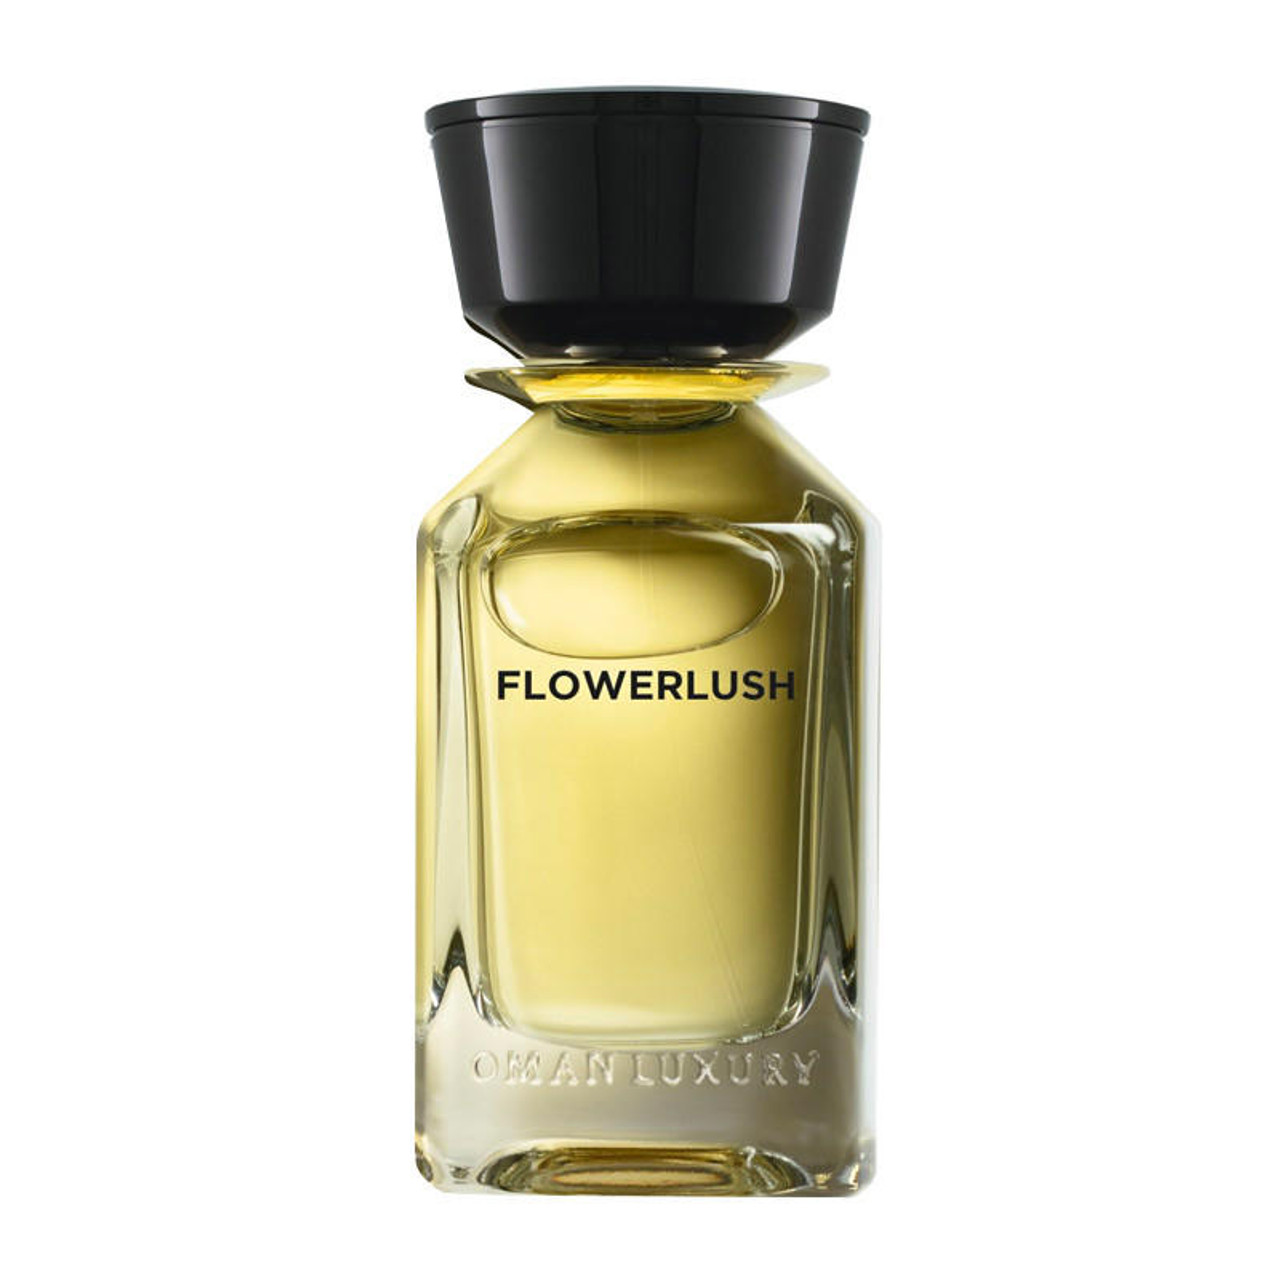 Flowerlush Eau de parfum